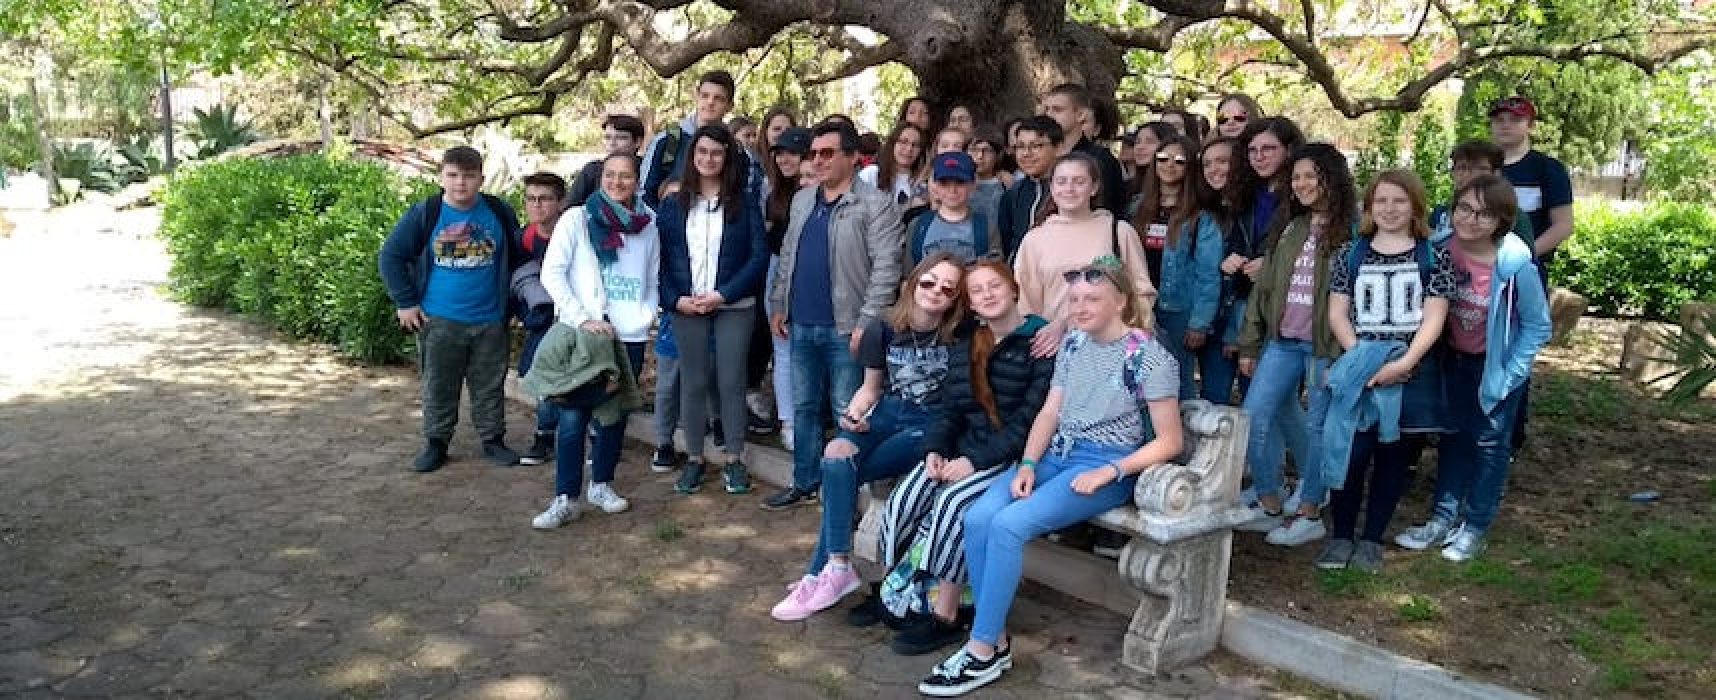 “At work in Europe”, la Monterisi accoglie gli studenti europei coinvolgendo la città / FOTO